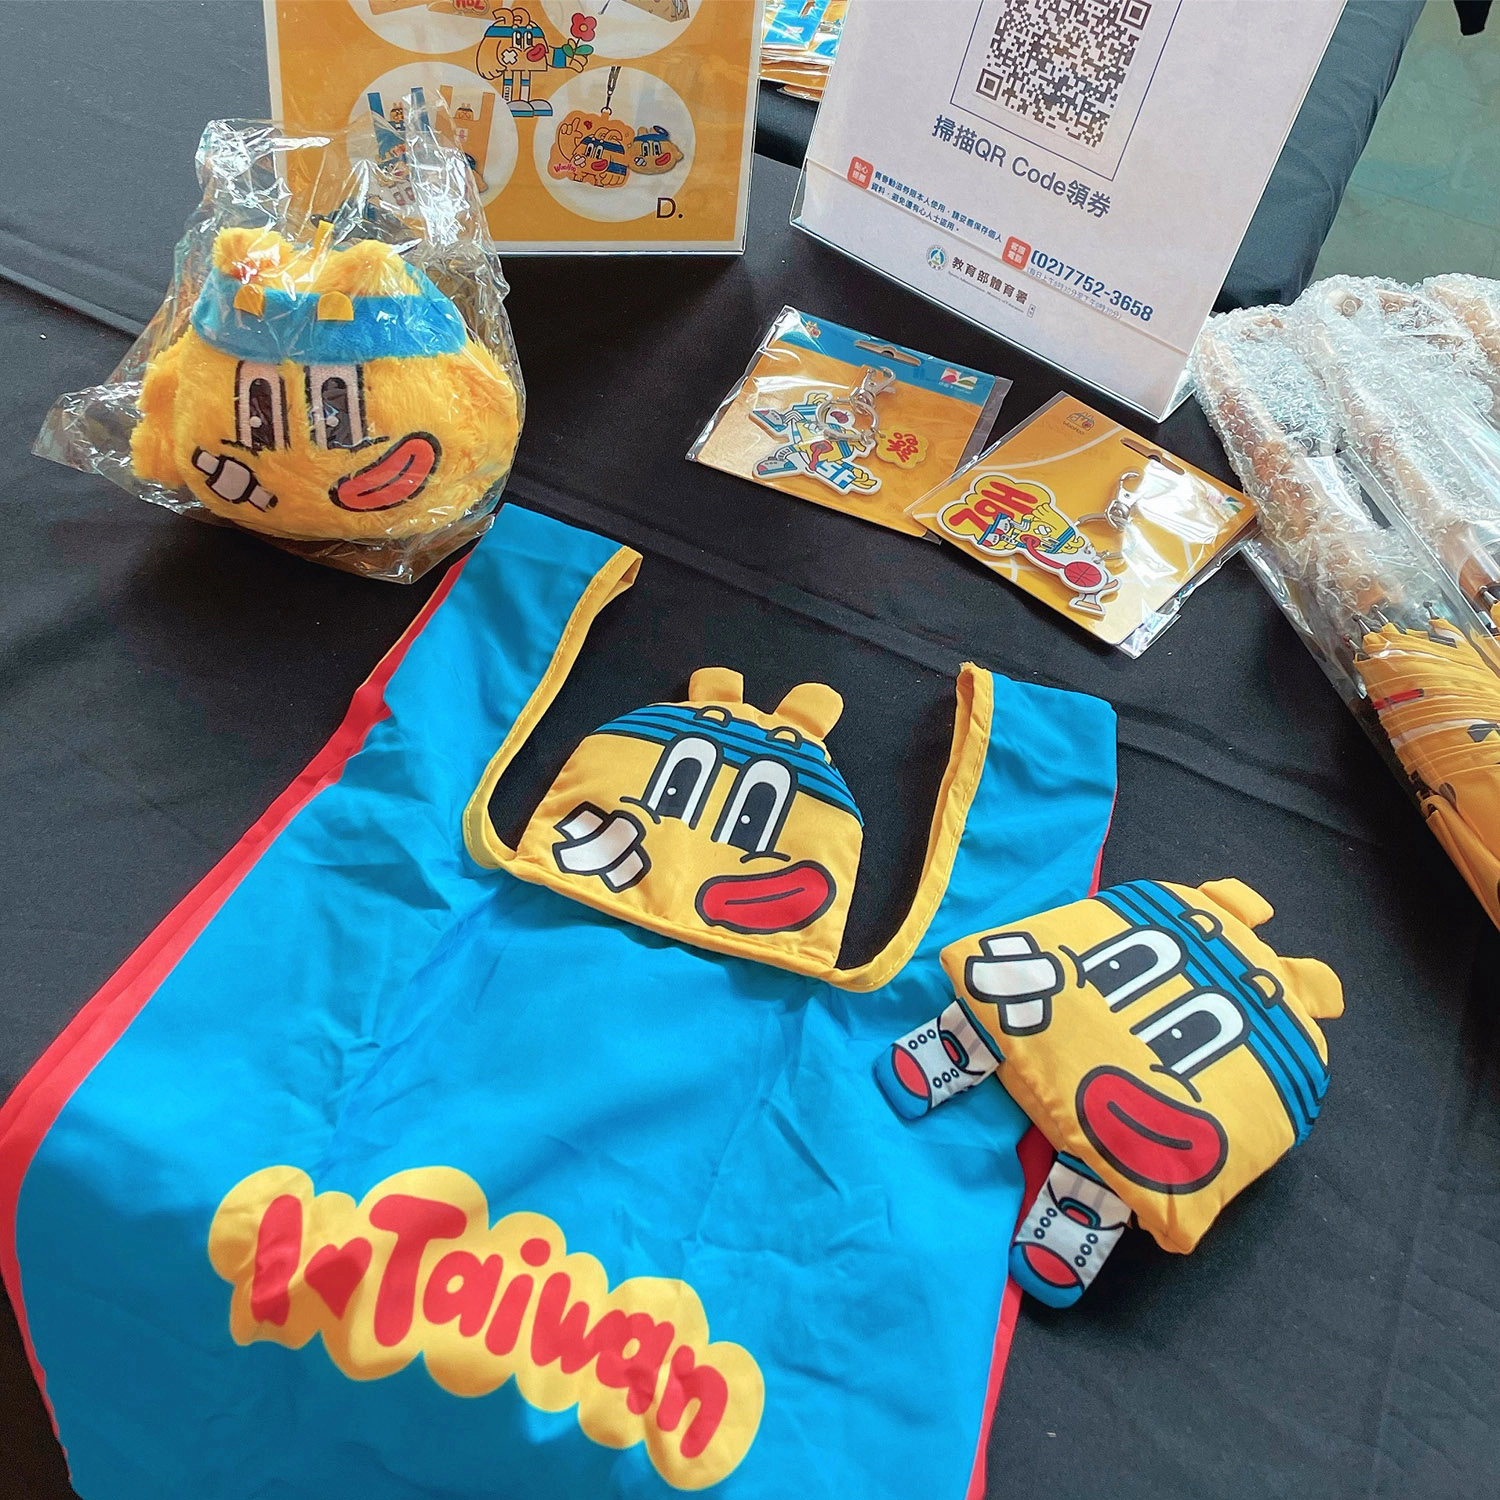 中華民國高級中等體育總會吉祥物WooHoo應援大禮包。